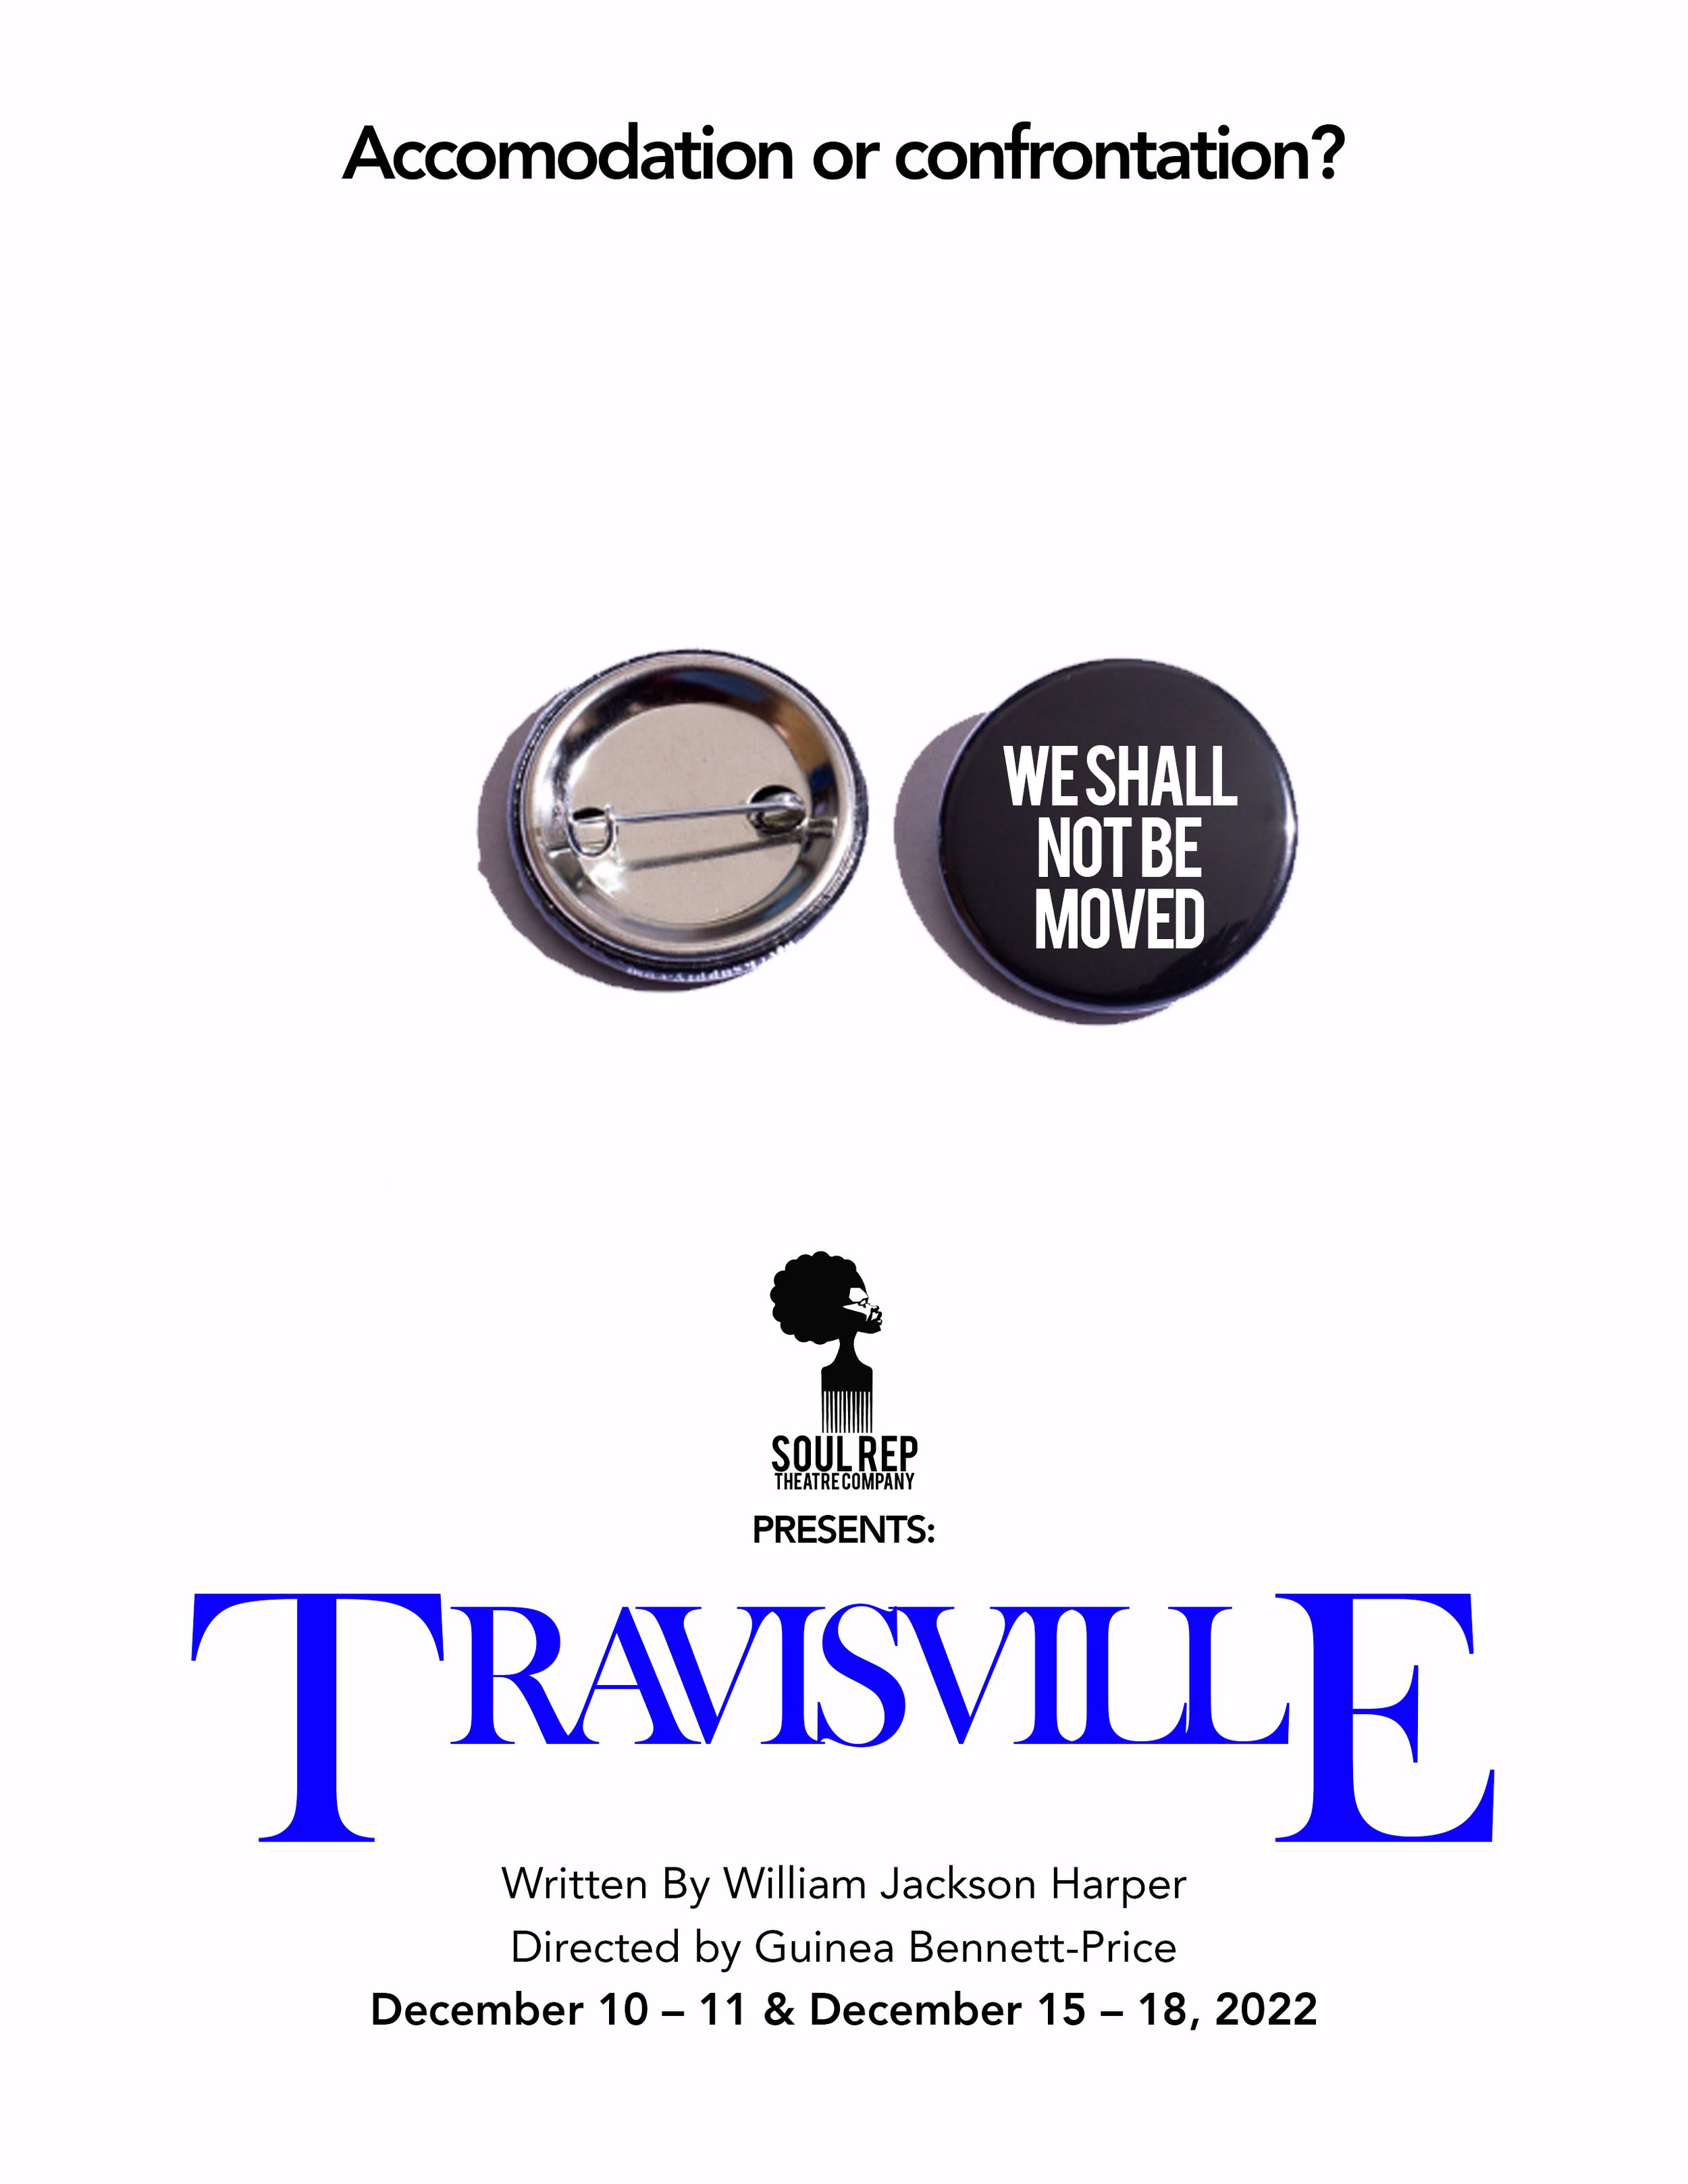 Travisville 4.jpg